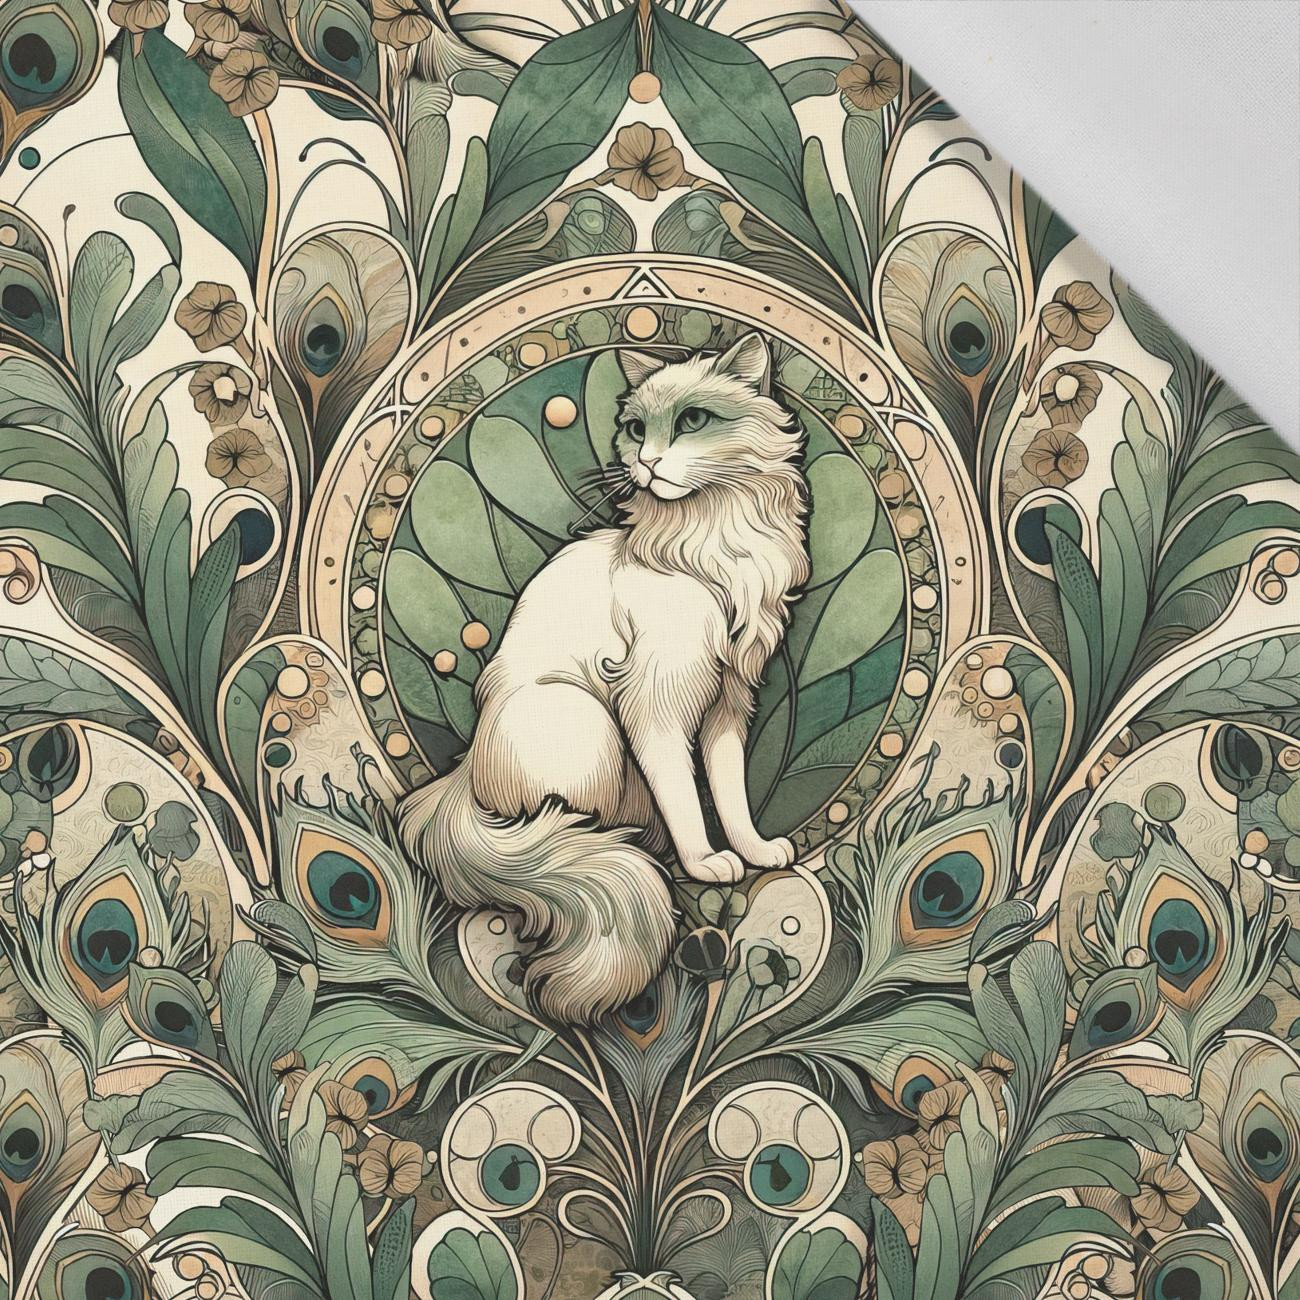 ART NOUVEAU CATS & FLOWERS PAT. 1 - panel (75cm x 80cm) Cotton woven fabric